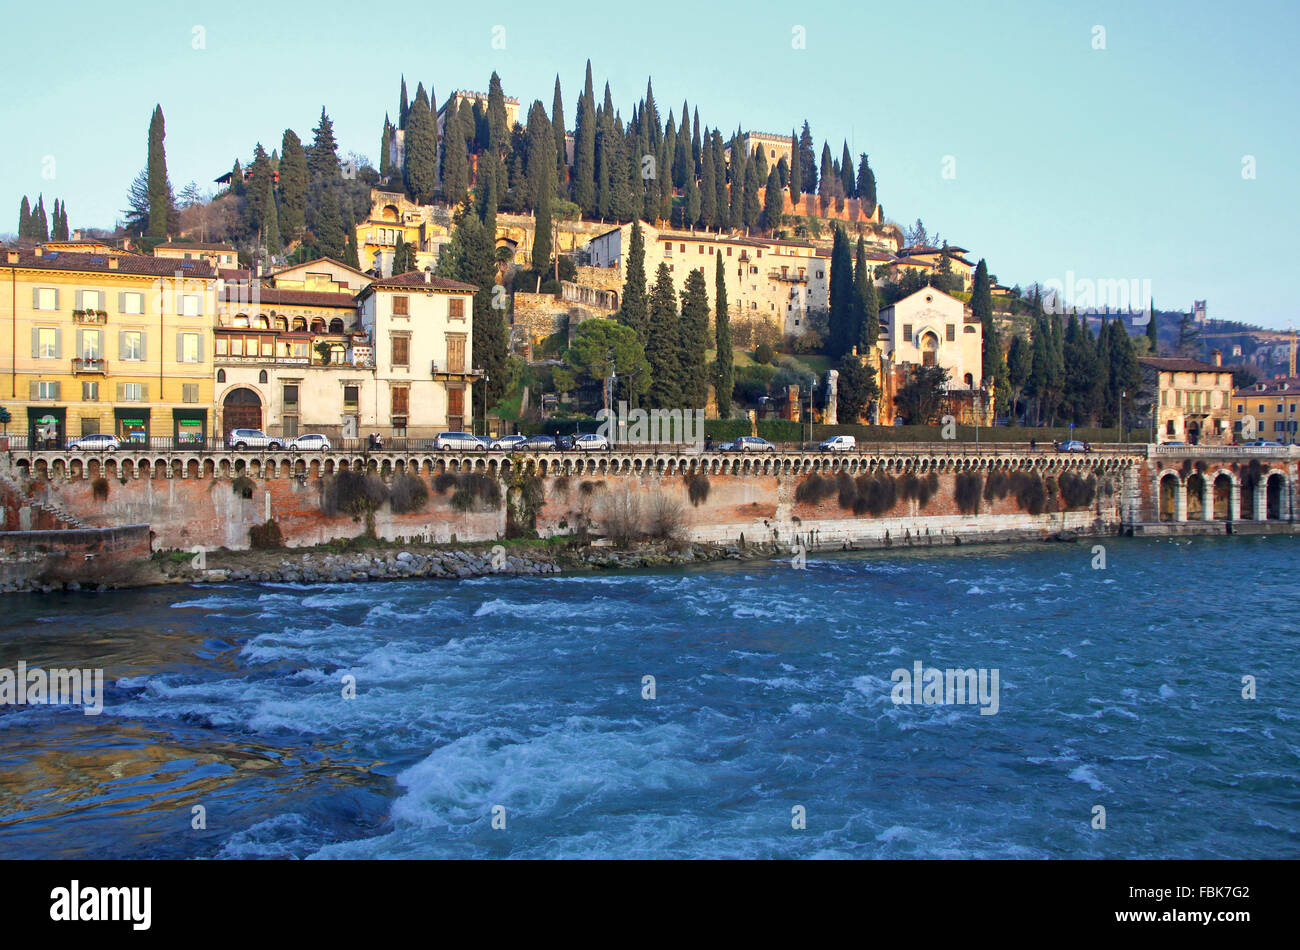 Vista del Castel San Pietro e il fiume Adige a Verona, Italia Foto Stock